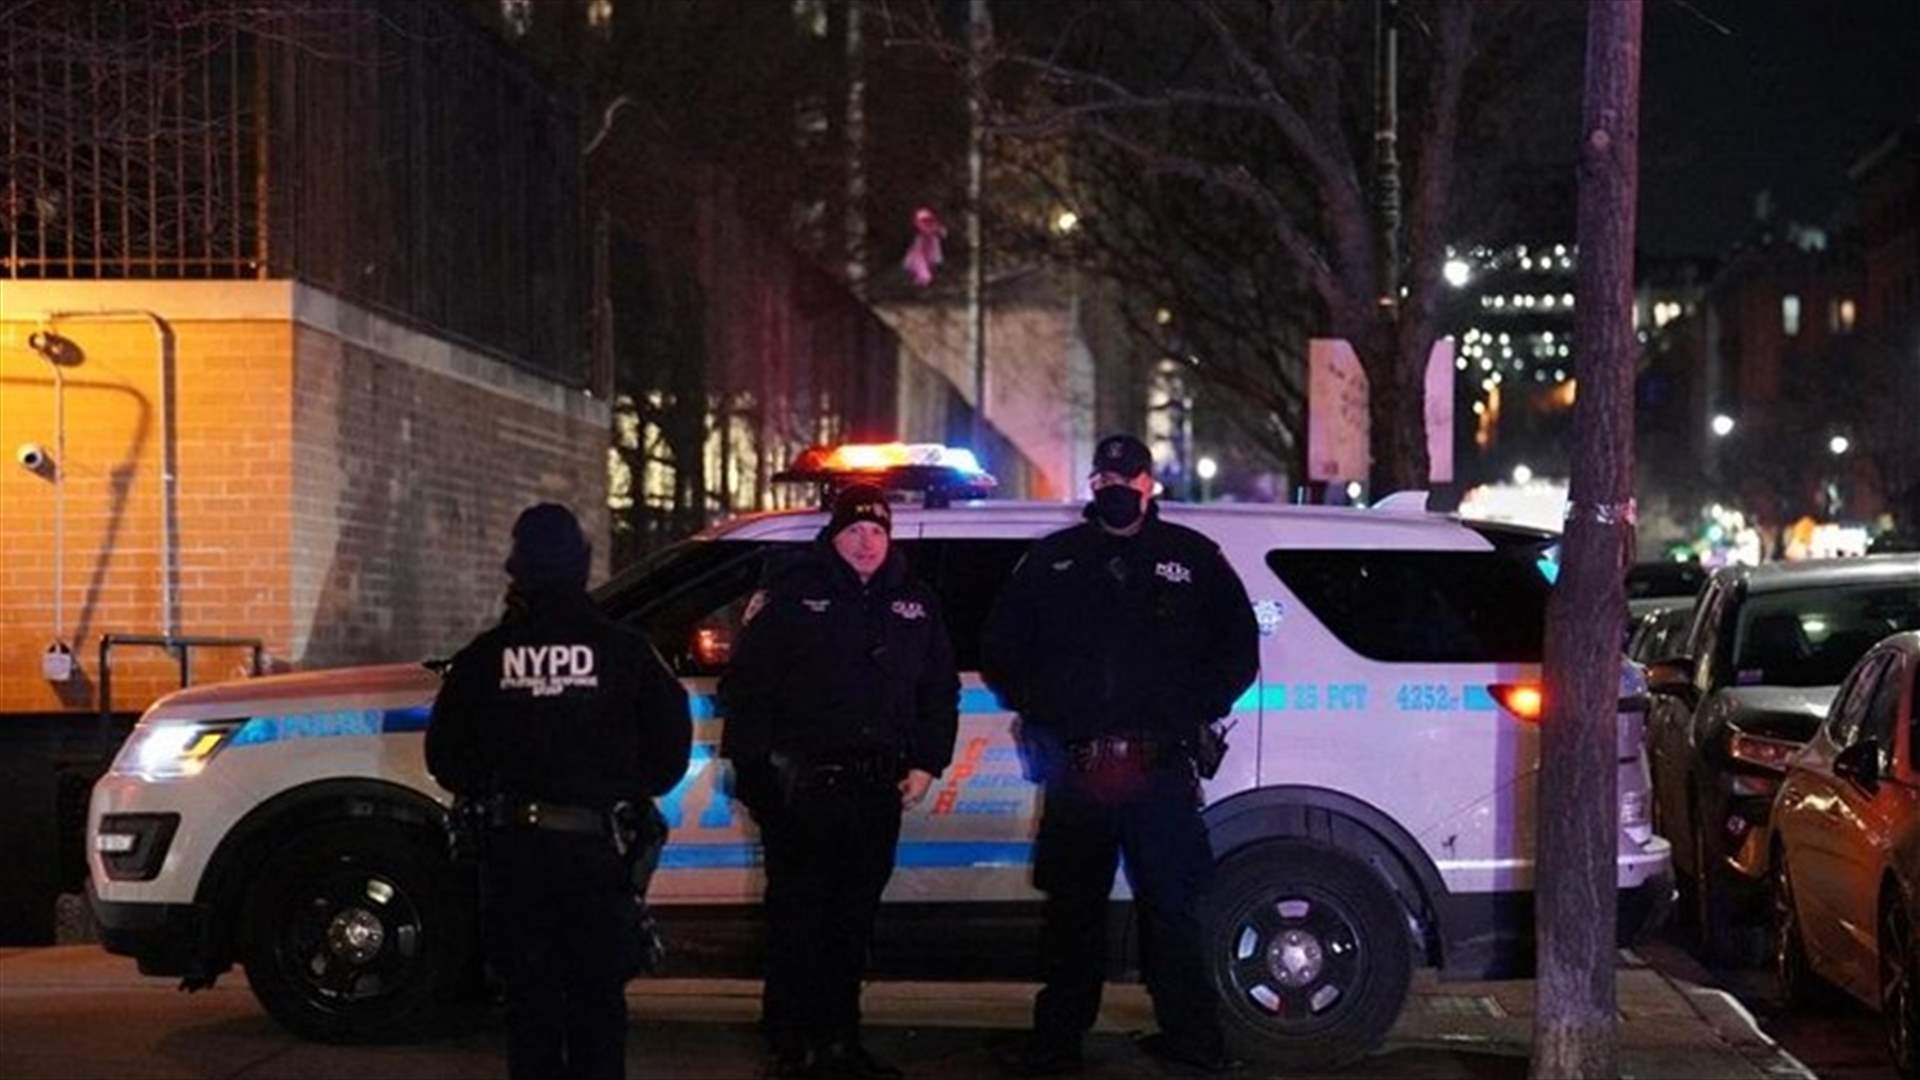 مقتل شرطي في مدينة نيويورك بعد بلاغ عن عنف أسري